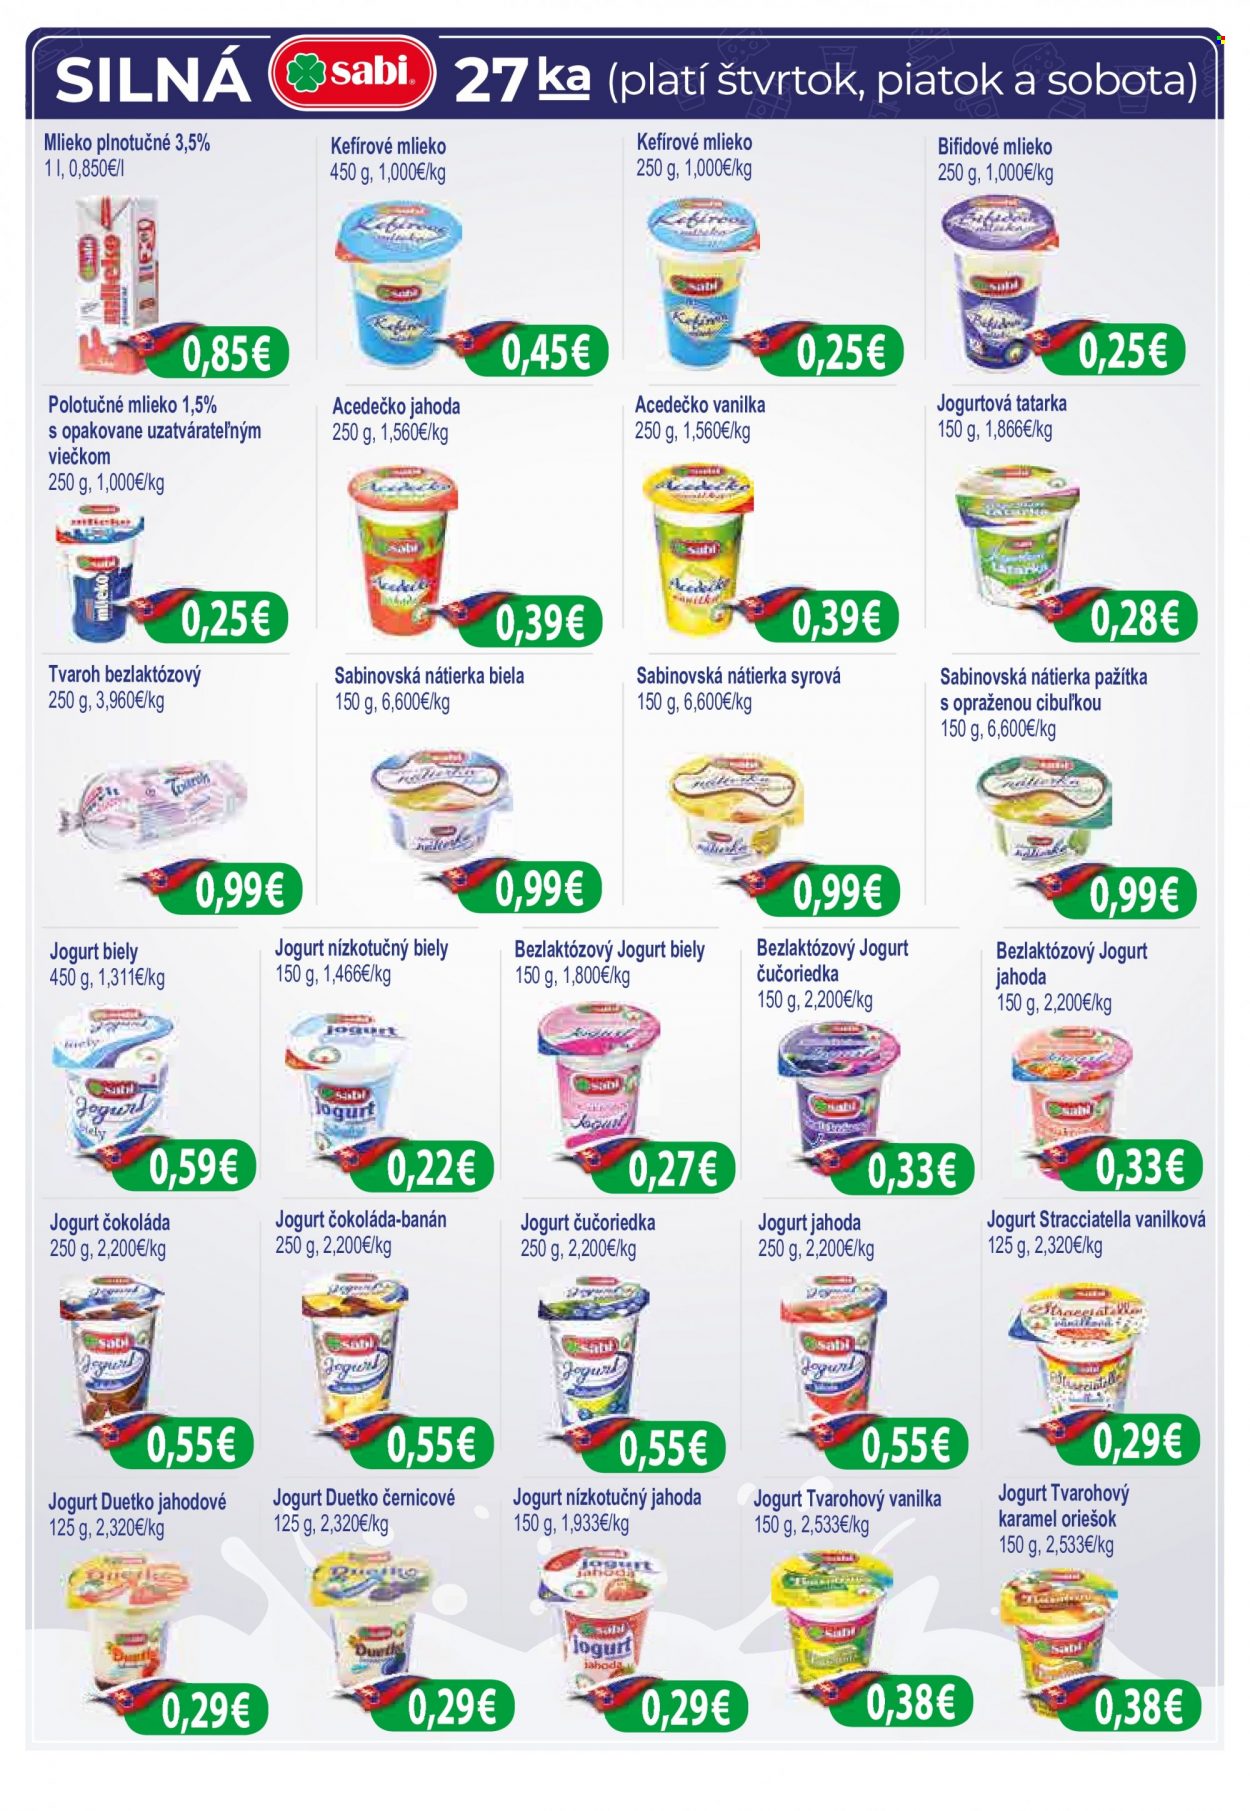 thumbnail - Leták Milk AGRO - 8.9.2021 - 21.9.2021 - Produkty v akcii - nátierka, syrová nátierka, Sabinovská nátierka, syr, bezlaktózový tvaroh, smotanový syr, jogurt, biely jogurt, ovocný jogurt, bezlaktózový jogurt, Acedečko, Duetko, tvarohový jogurt, ochutený jogurt, acidofilné mlieko, kefírové mlieko, bifidové mlieko, mliečny nápoj, plnotučné mlieko, polotučné mlieko, hotová omáčka. Strana 3.